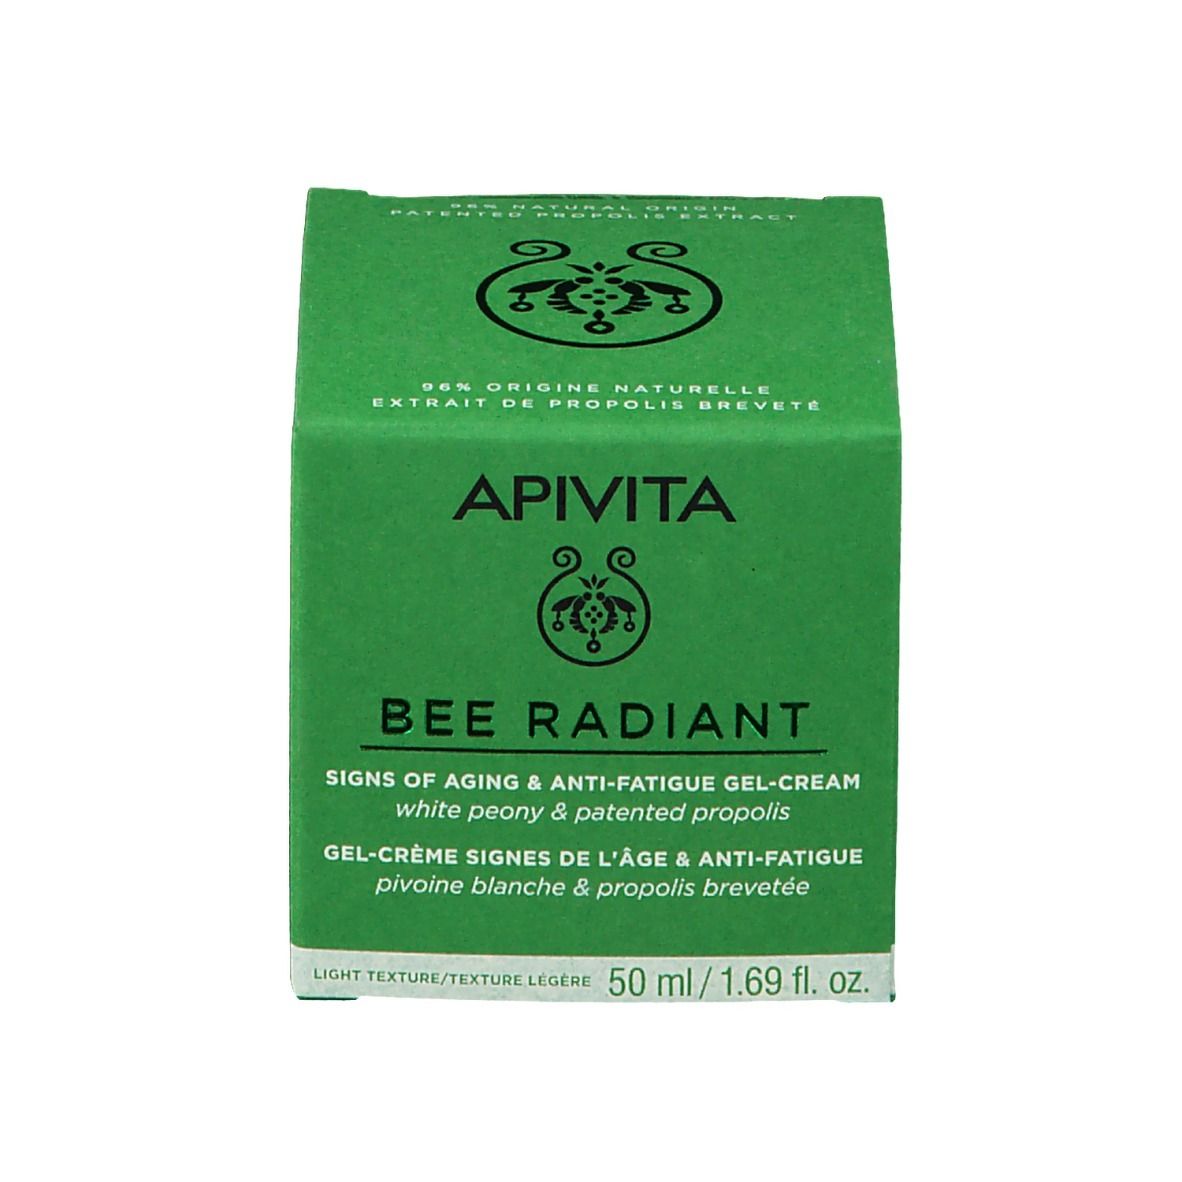 Apivita Bee Radiant Gel-Crème Signes de l'Âge & Anti-Fatigue Texture Légère